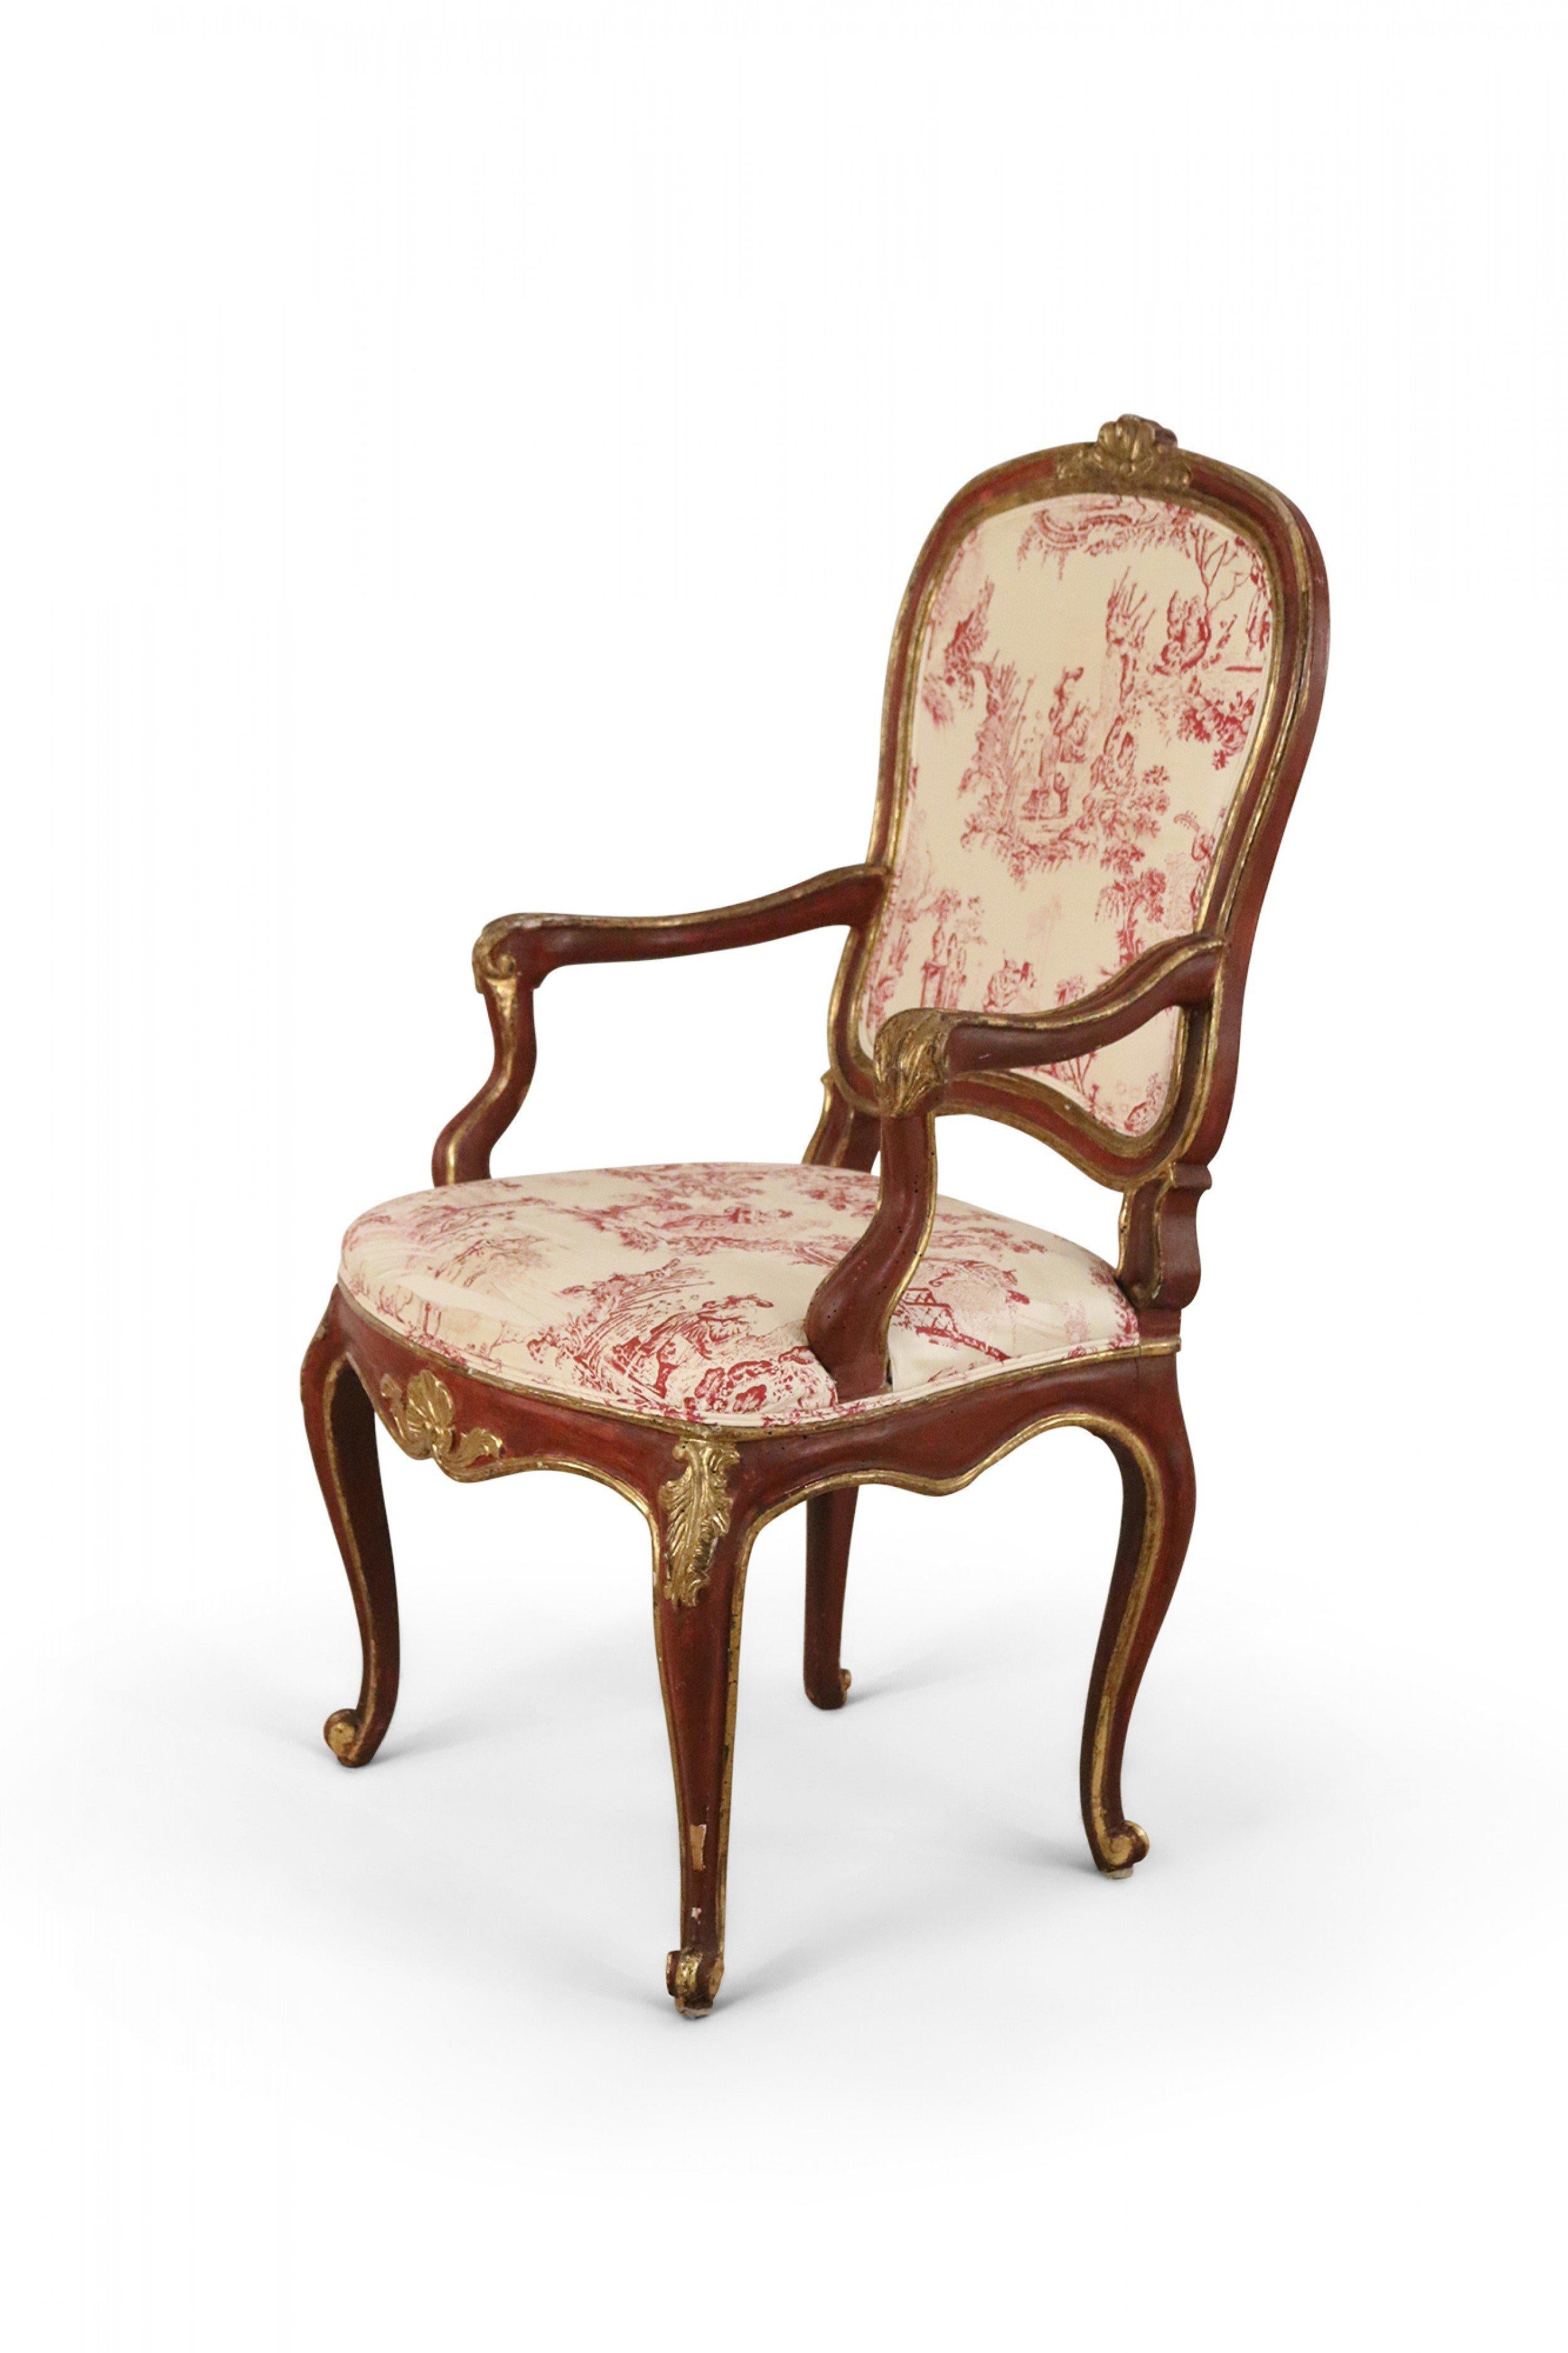 3 fauteuils italiens de style vénitien (XVIIIe siècle) avec des cadres en bois peint en rouge avec des ornements en bois doré sculpté et des dossiers et coussins d'assise tapissés de toile beige et rose. (Prix unitaire).